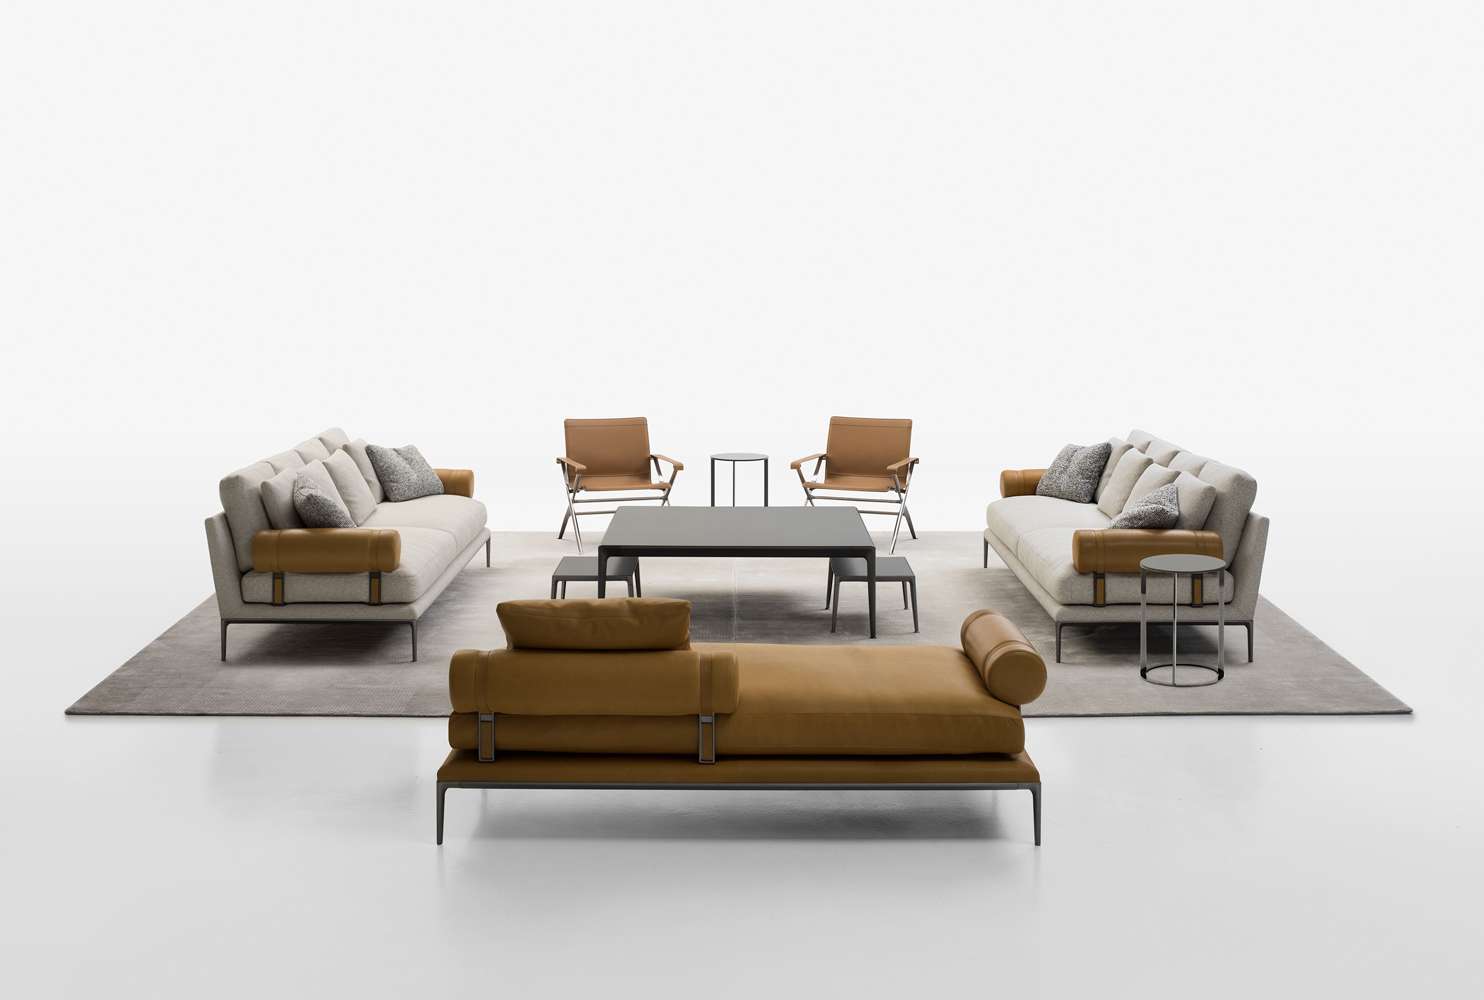 Os sofás projetados por Citterio se destacam pelo conforto e pela elegância